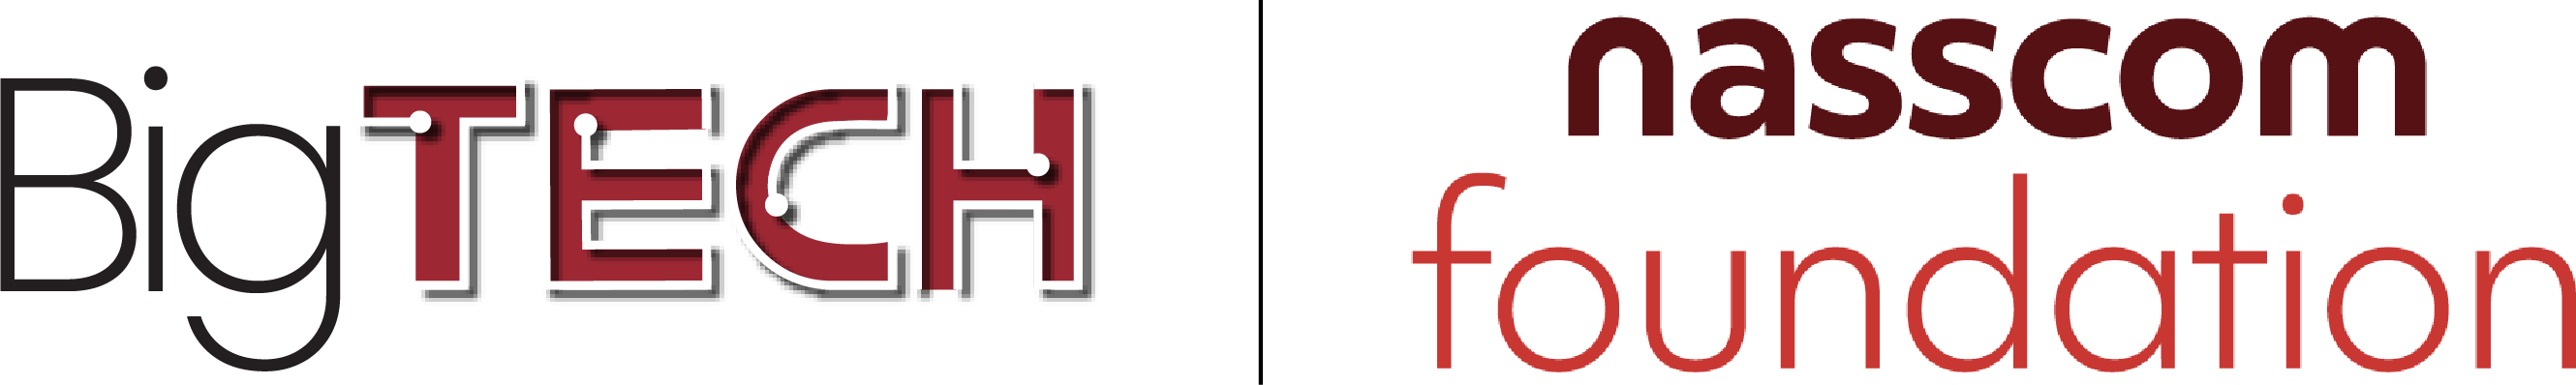 nasscom foundation logo